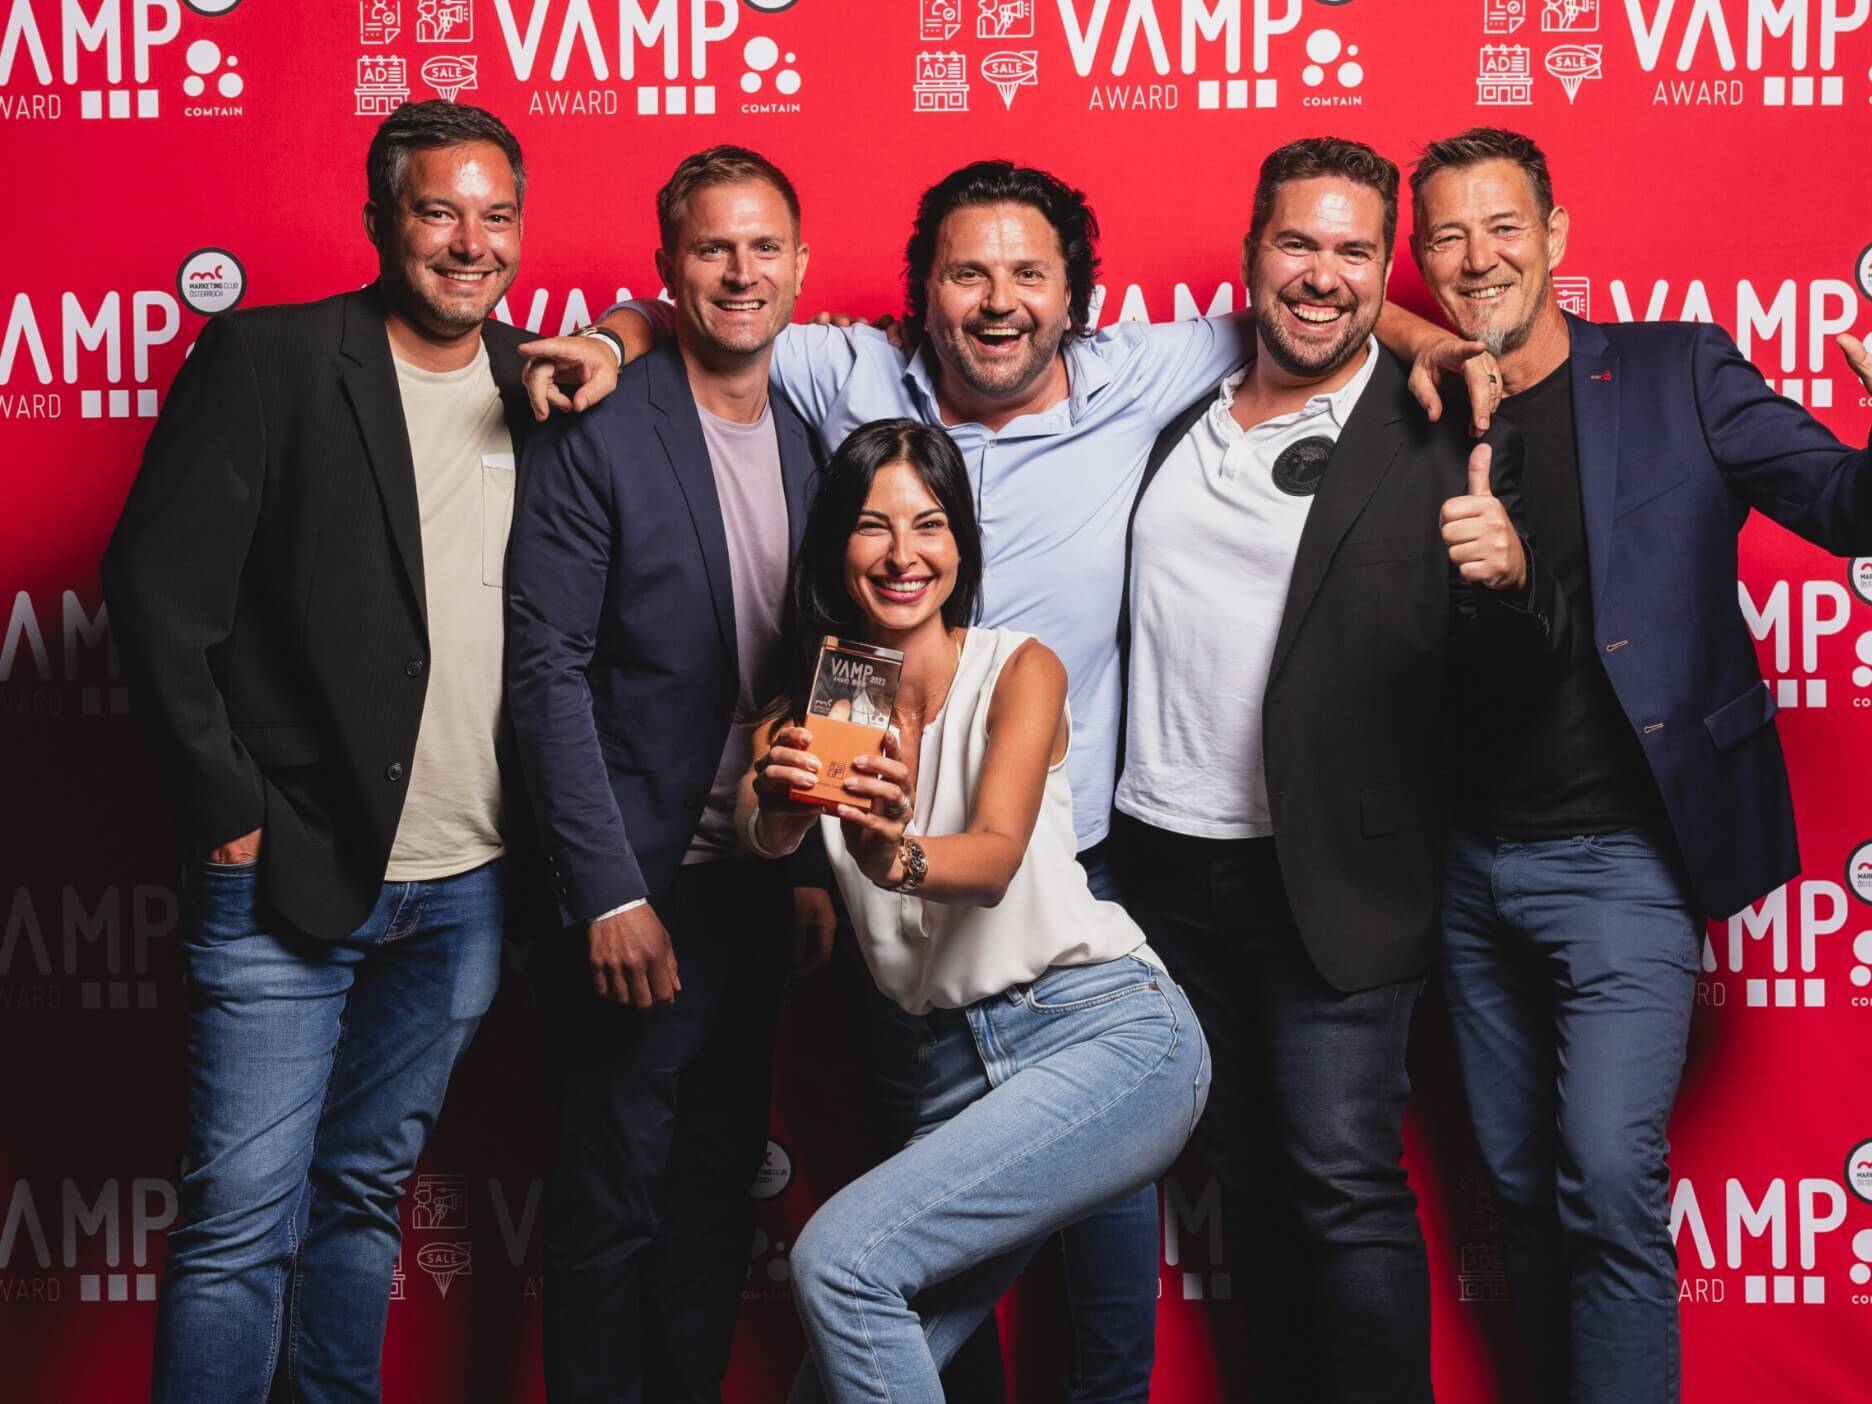 VAMP Award Gruppenbild mit fünf Männern und einer Frau vor einer roten Fotowand